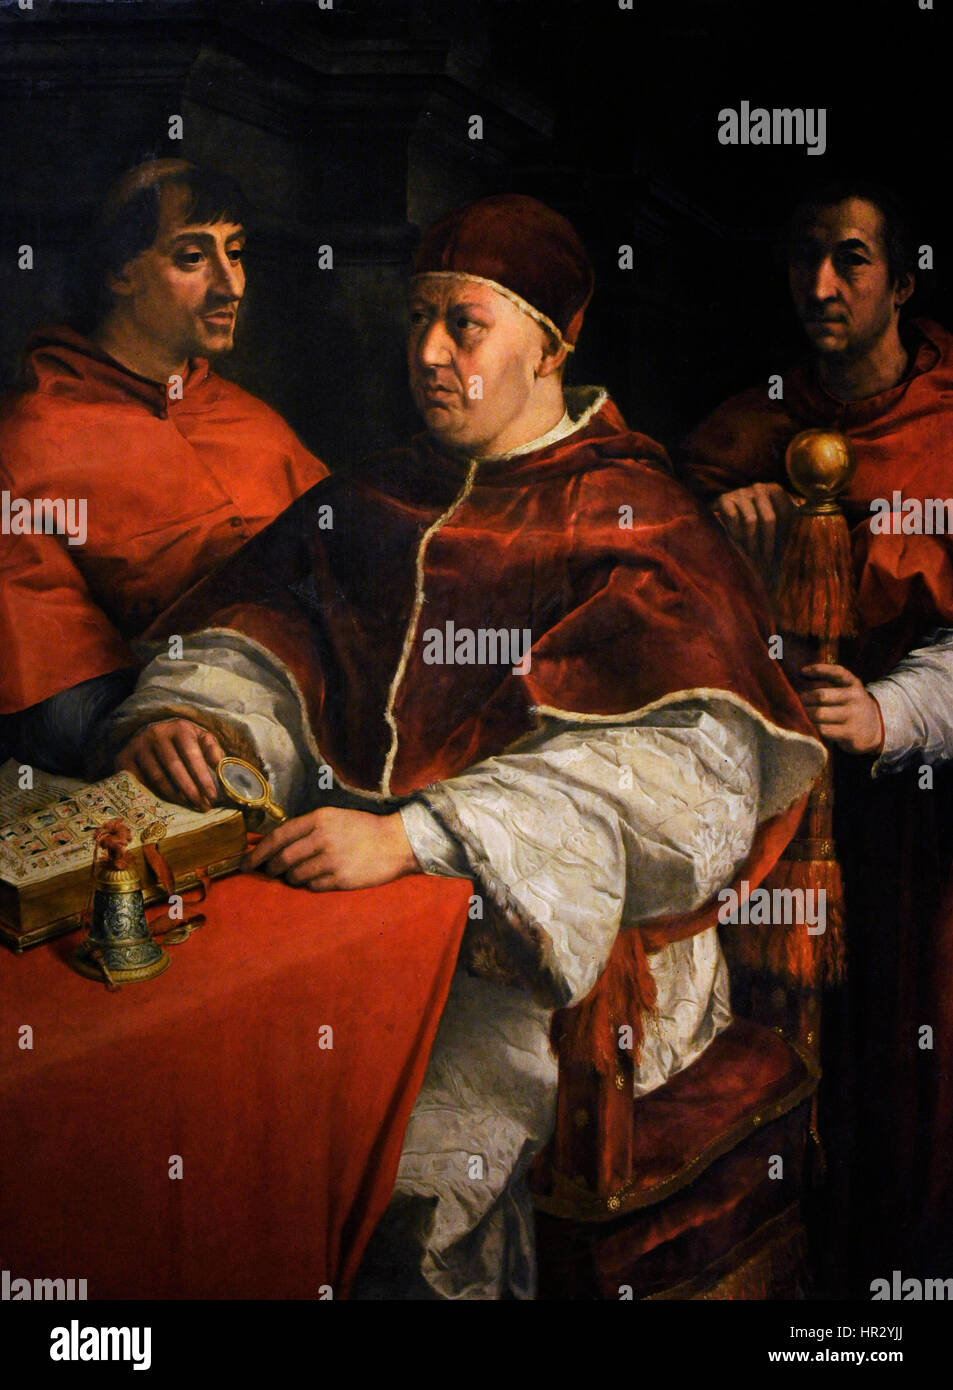 Le pape Léon X (1475-1521). Portrait de Léon X avec deux cardinaux, 1525. Peinture d'Andrea del Sarto (1486-1530), copie d'après Raphaël. Collection Farnèse. Musée national de Capodimonte. Naples. L'Italie. Banque D'Images